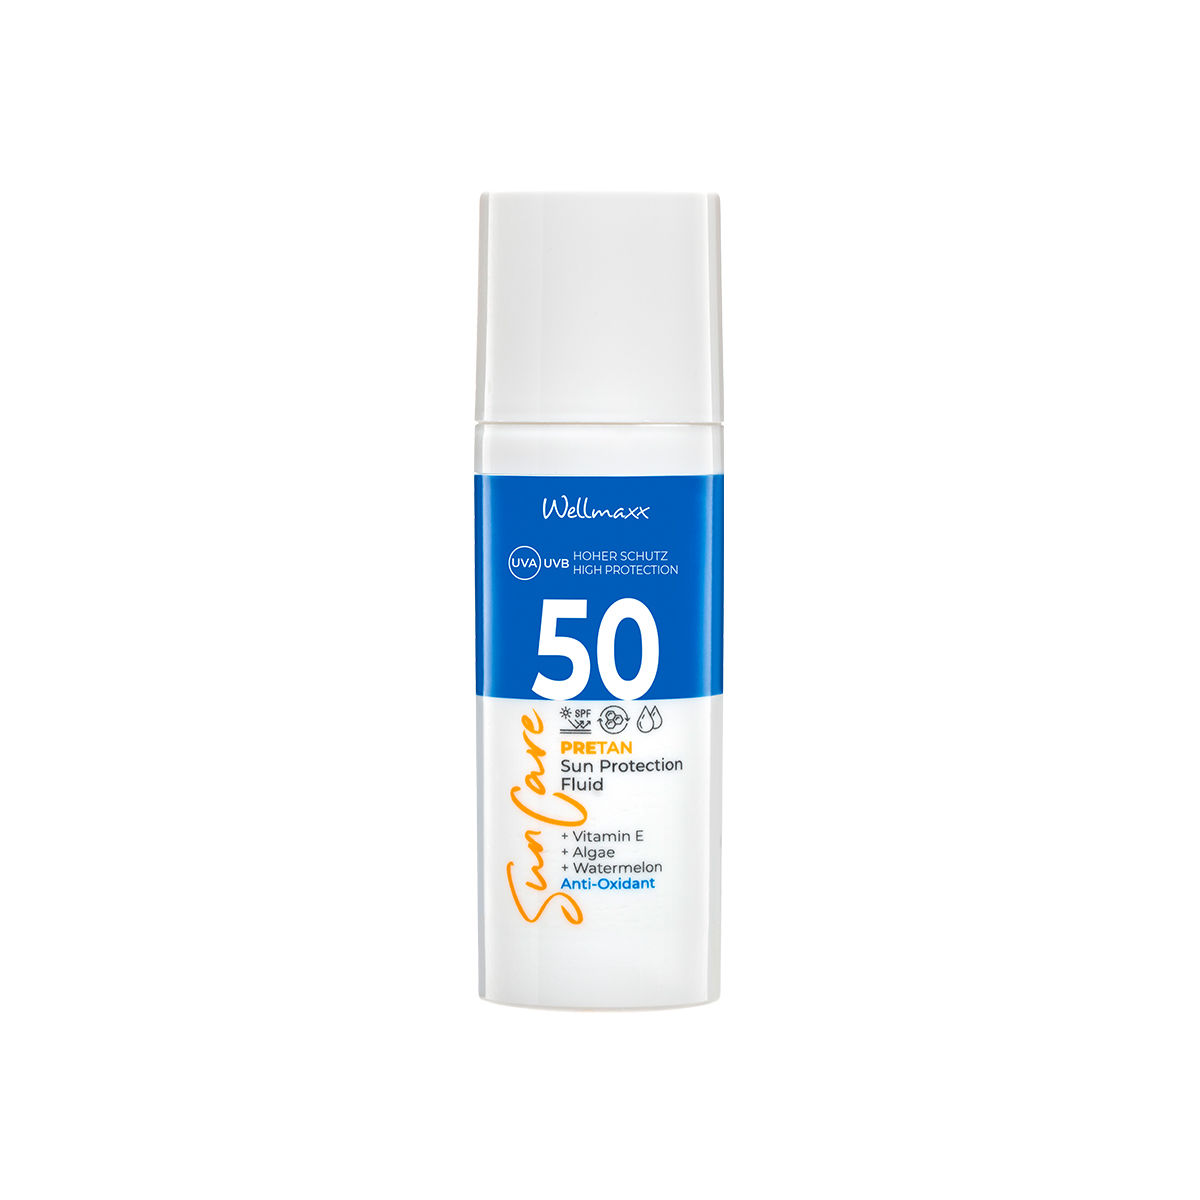 Sun Care Face Protection Fluid SPF 50 